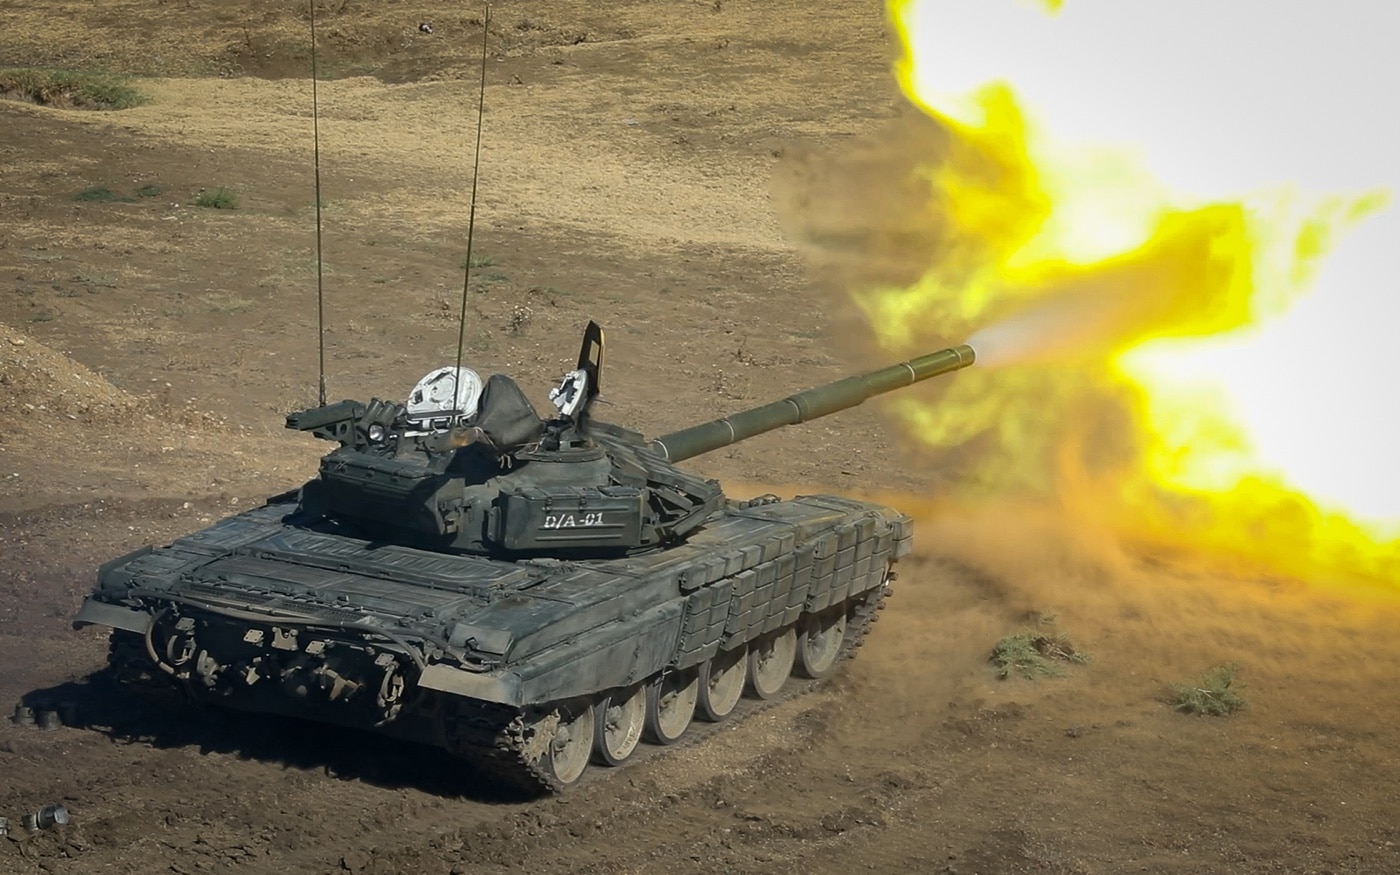 t-72 firing